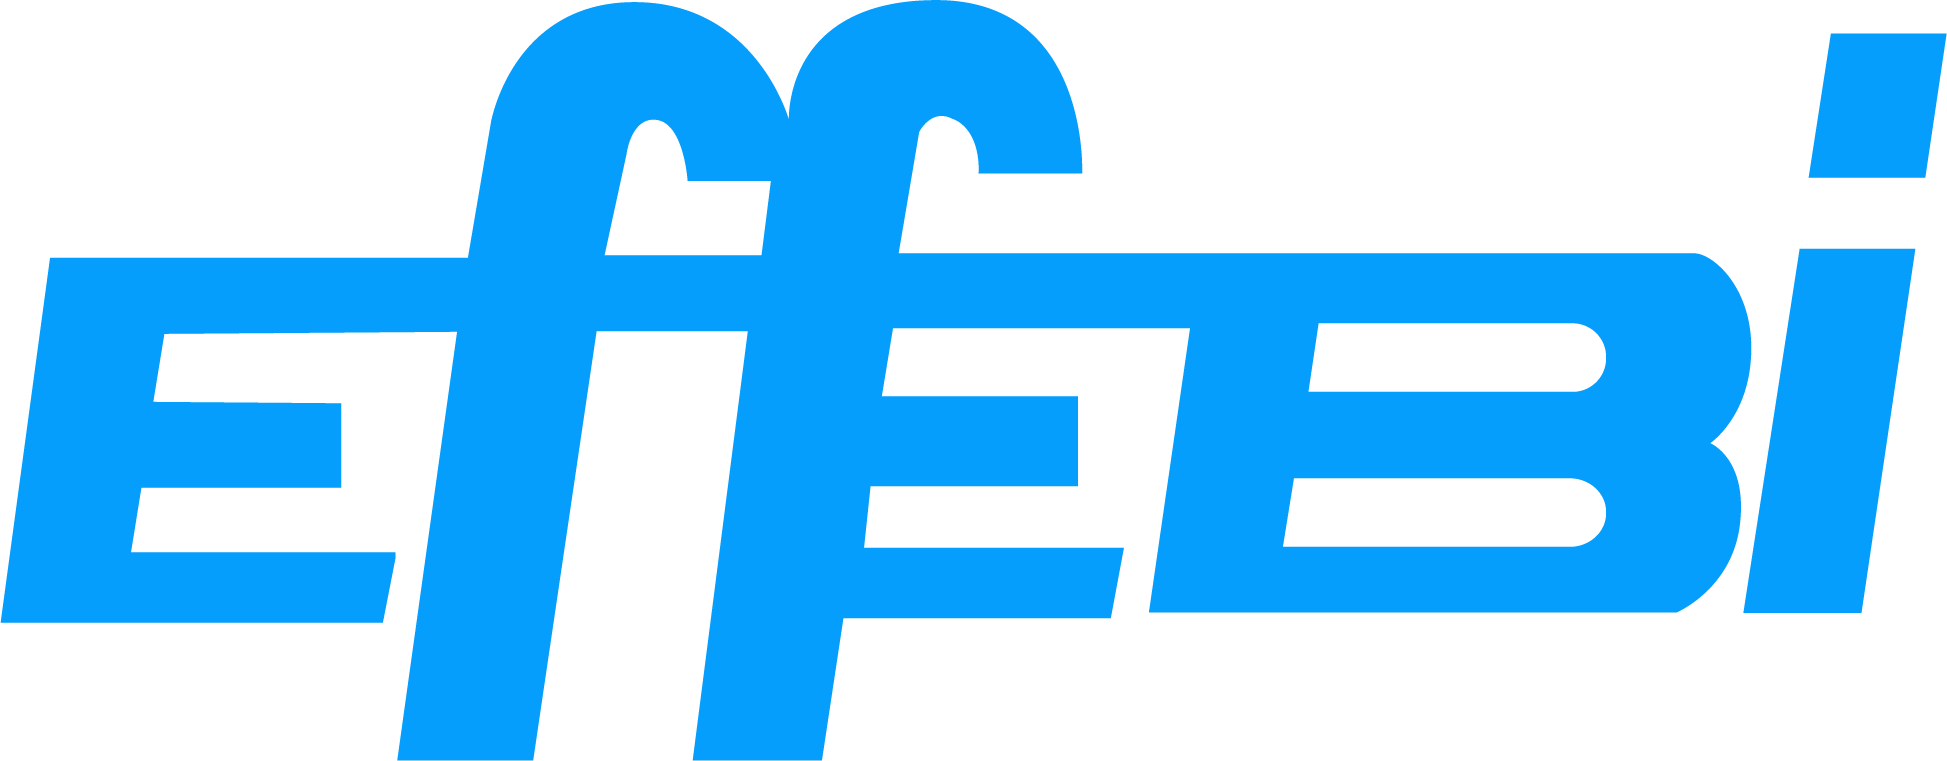 Logo Effebi